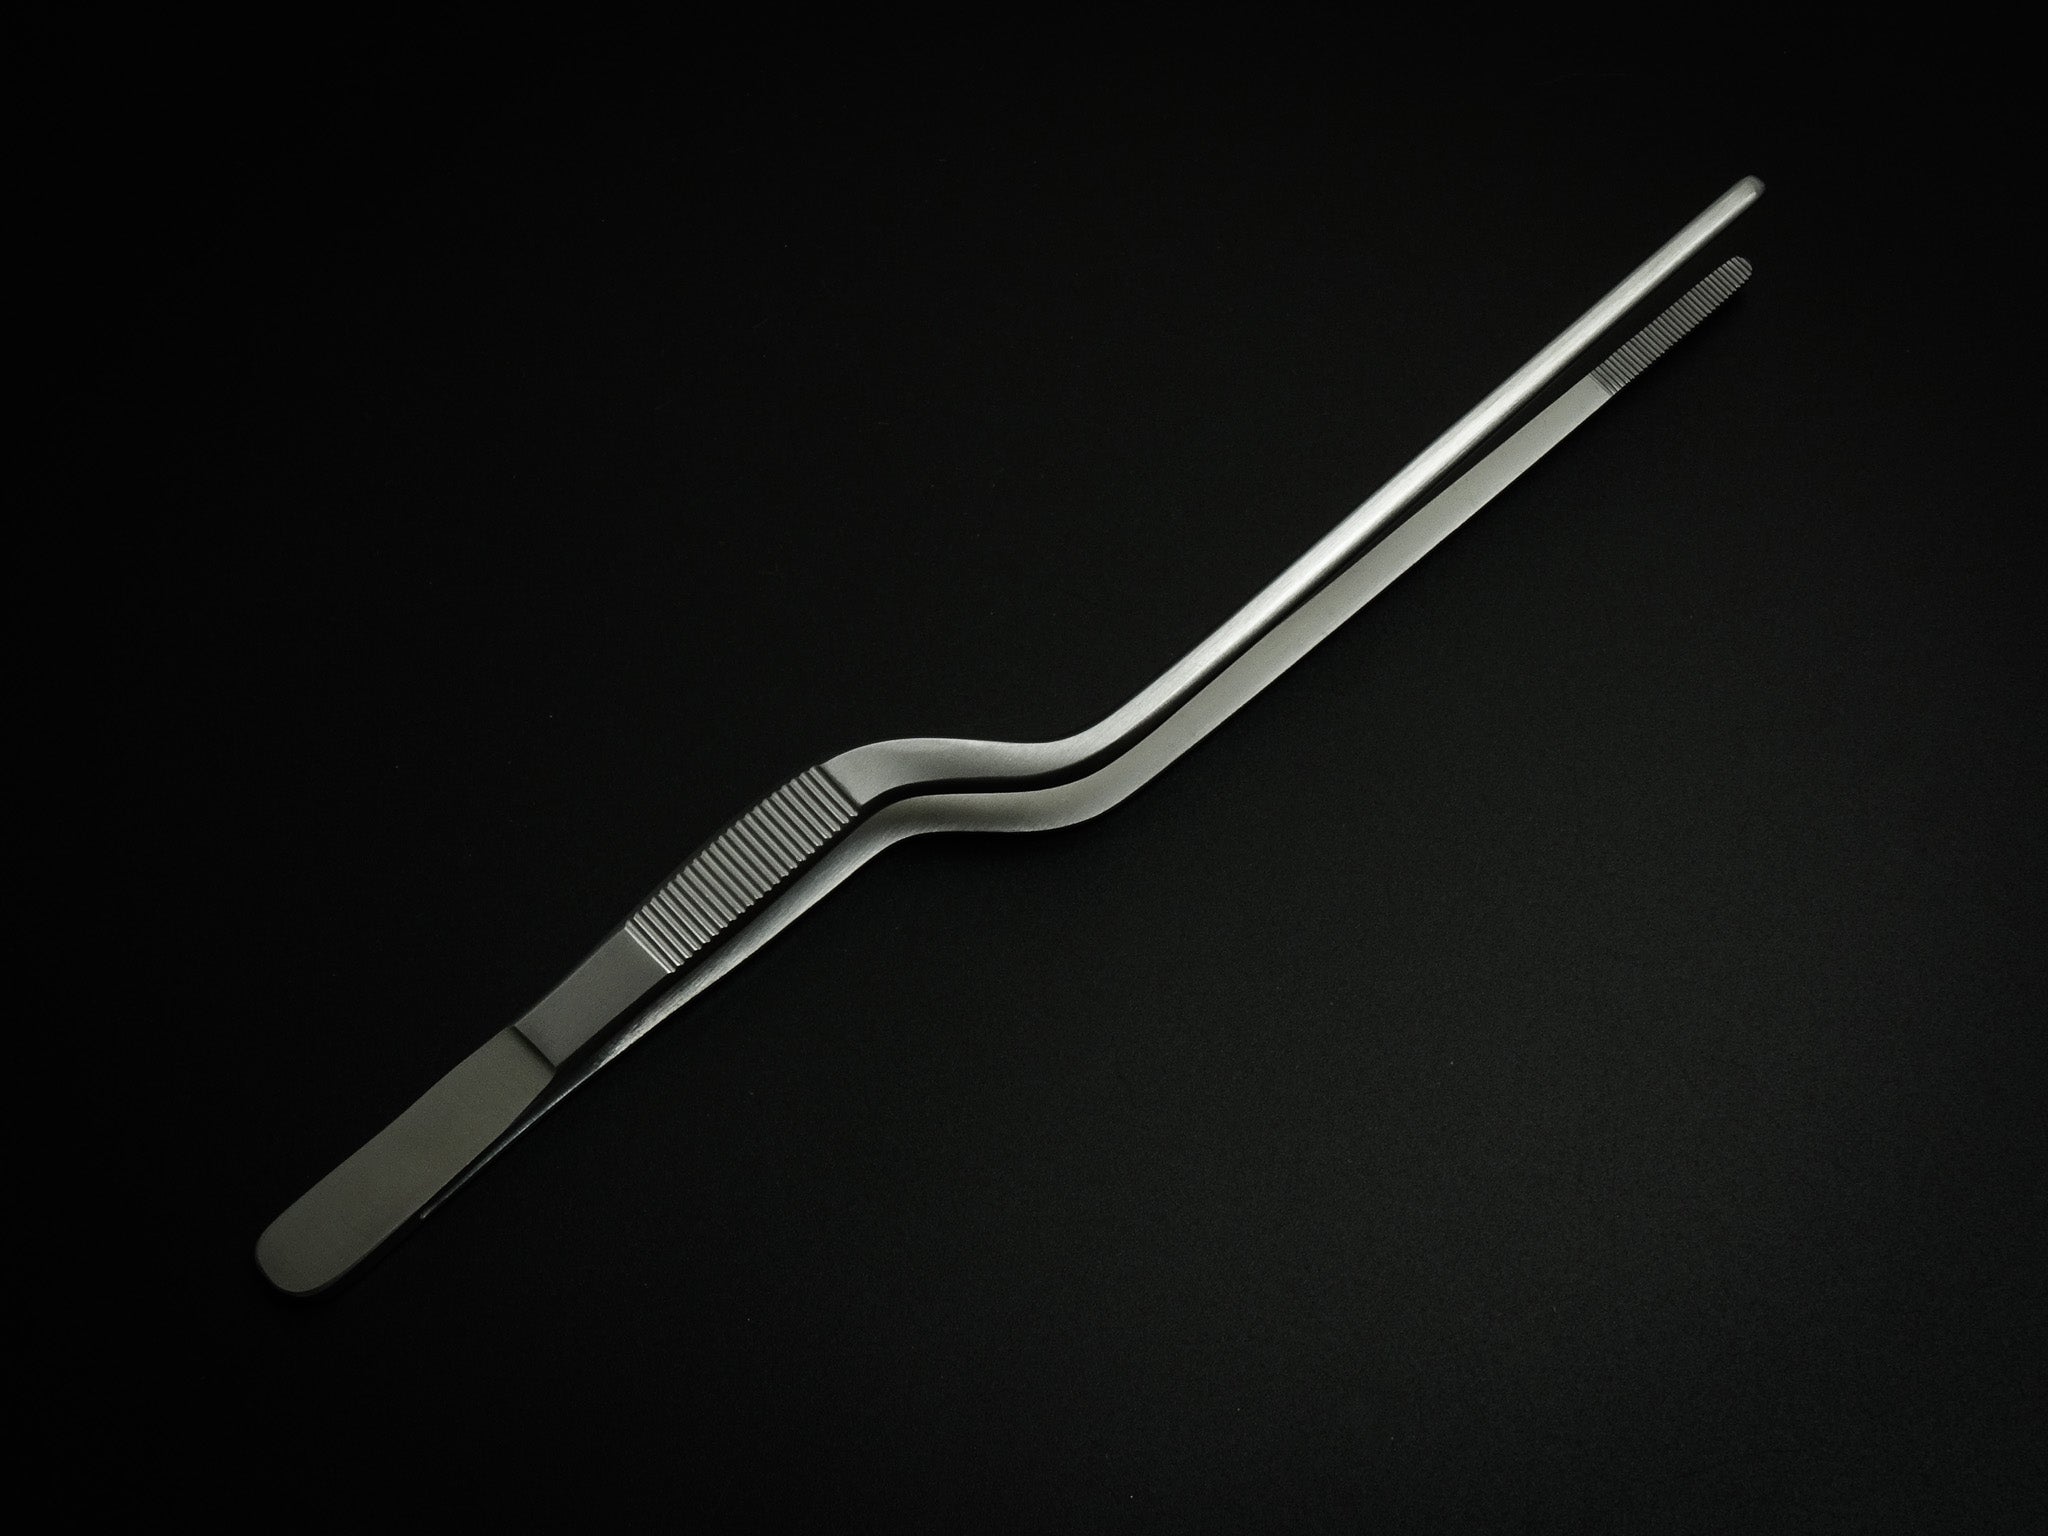 Plating Tweezers GOLDfinger - 200mm (7.9) – SharpEdge